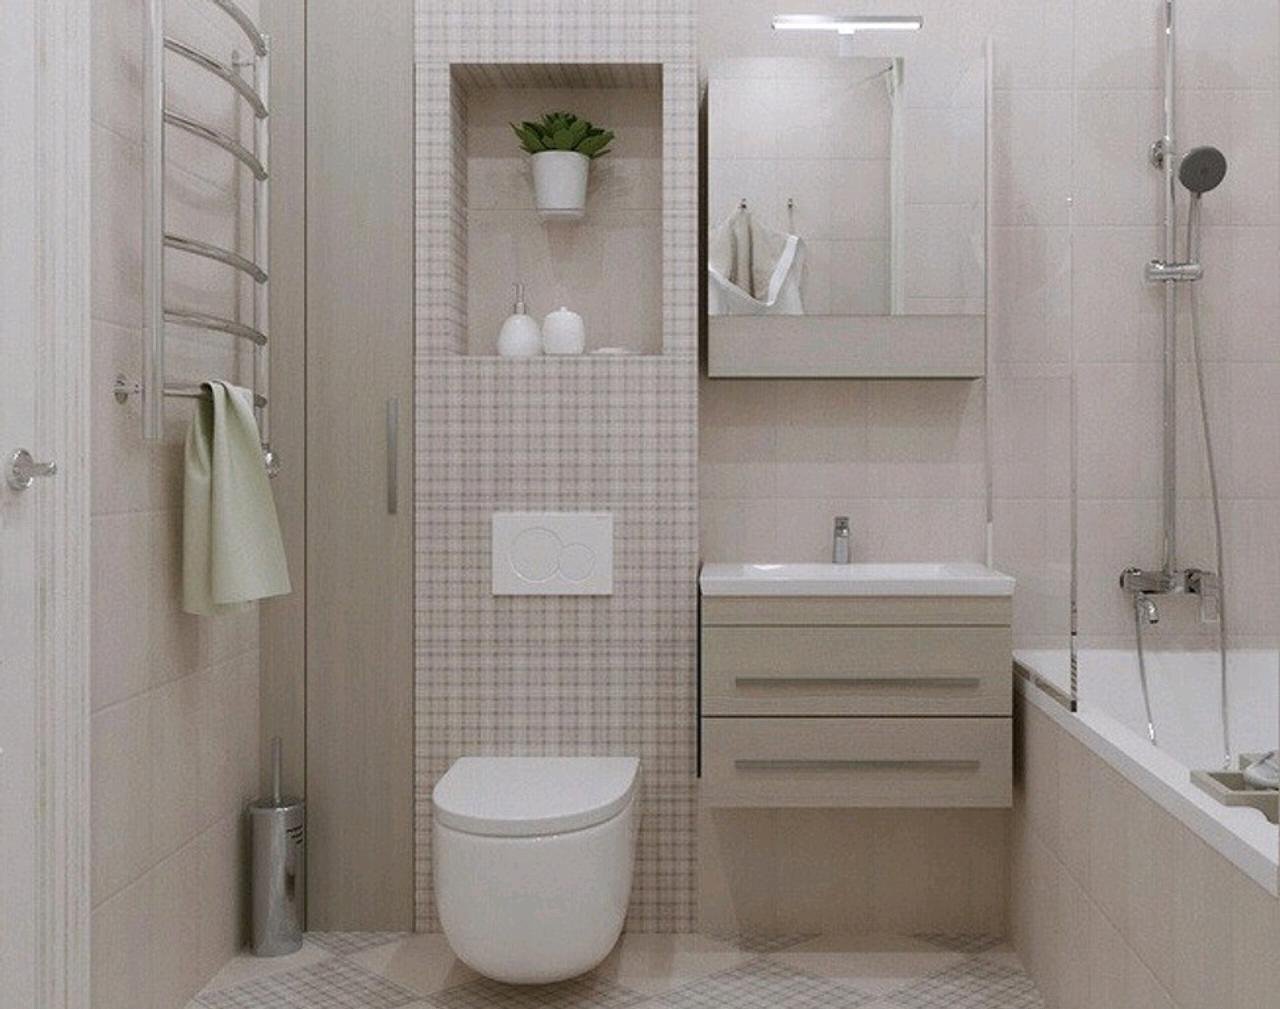 дизайн небольшой совмещенной ванной комнаты фото